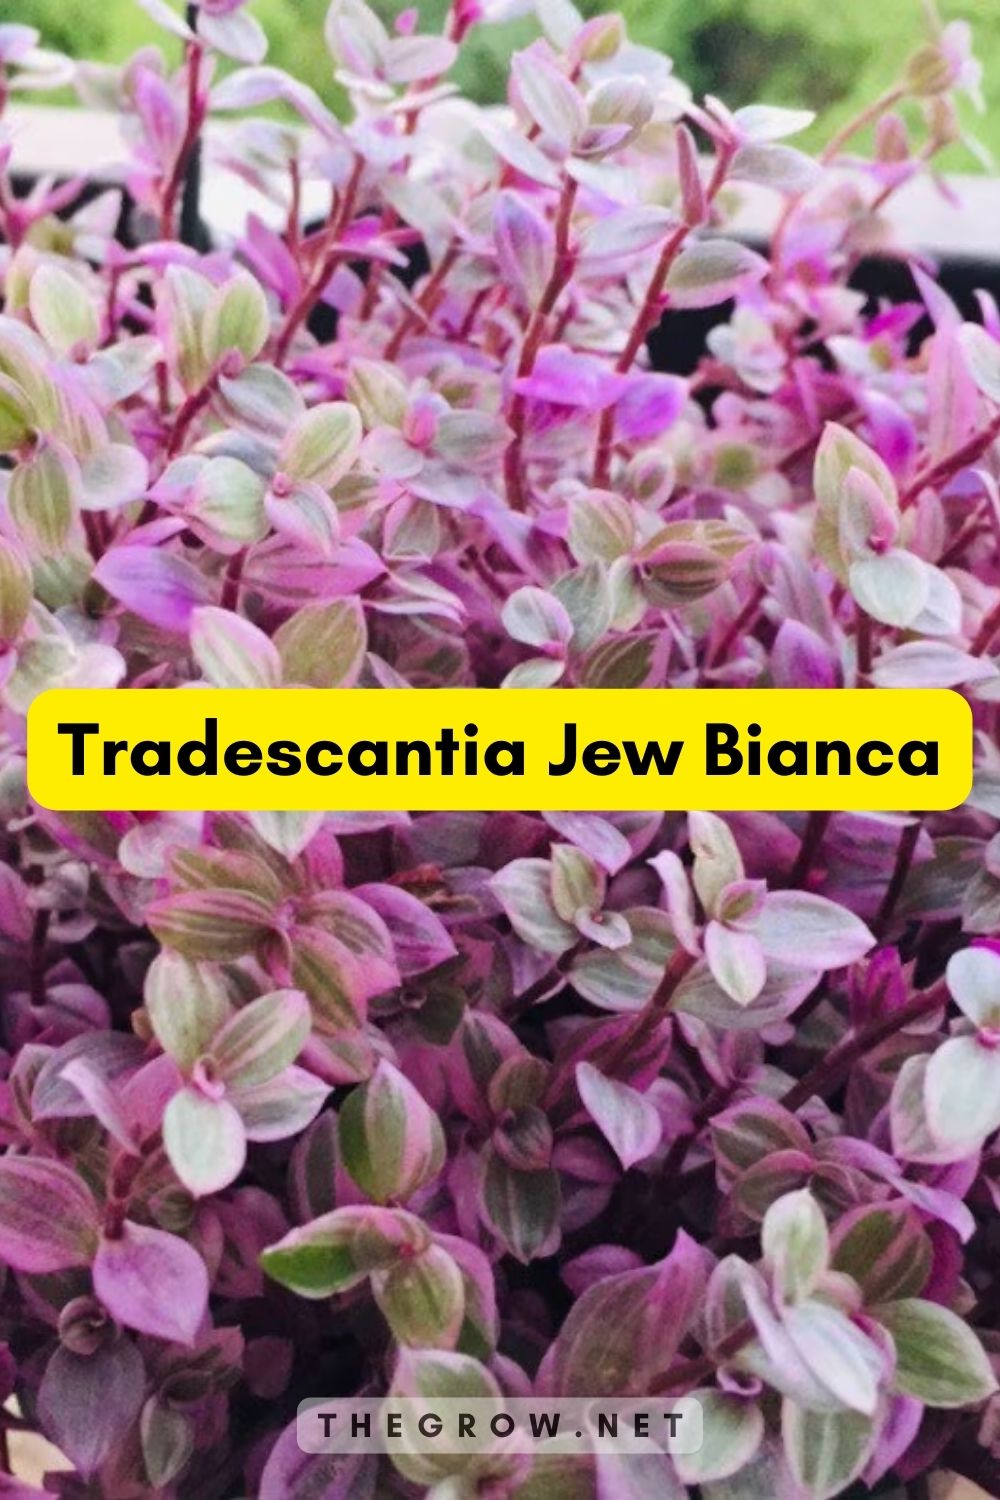 Tradescantia Jew Bianca